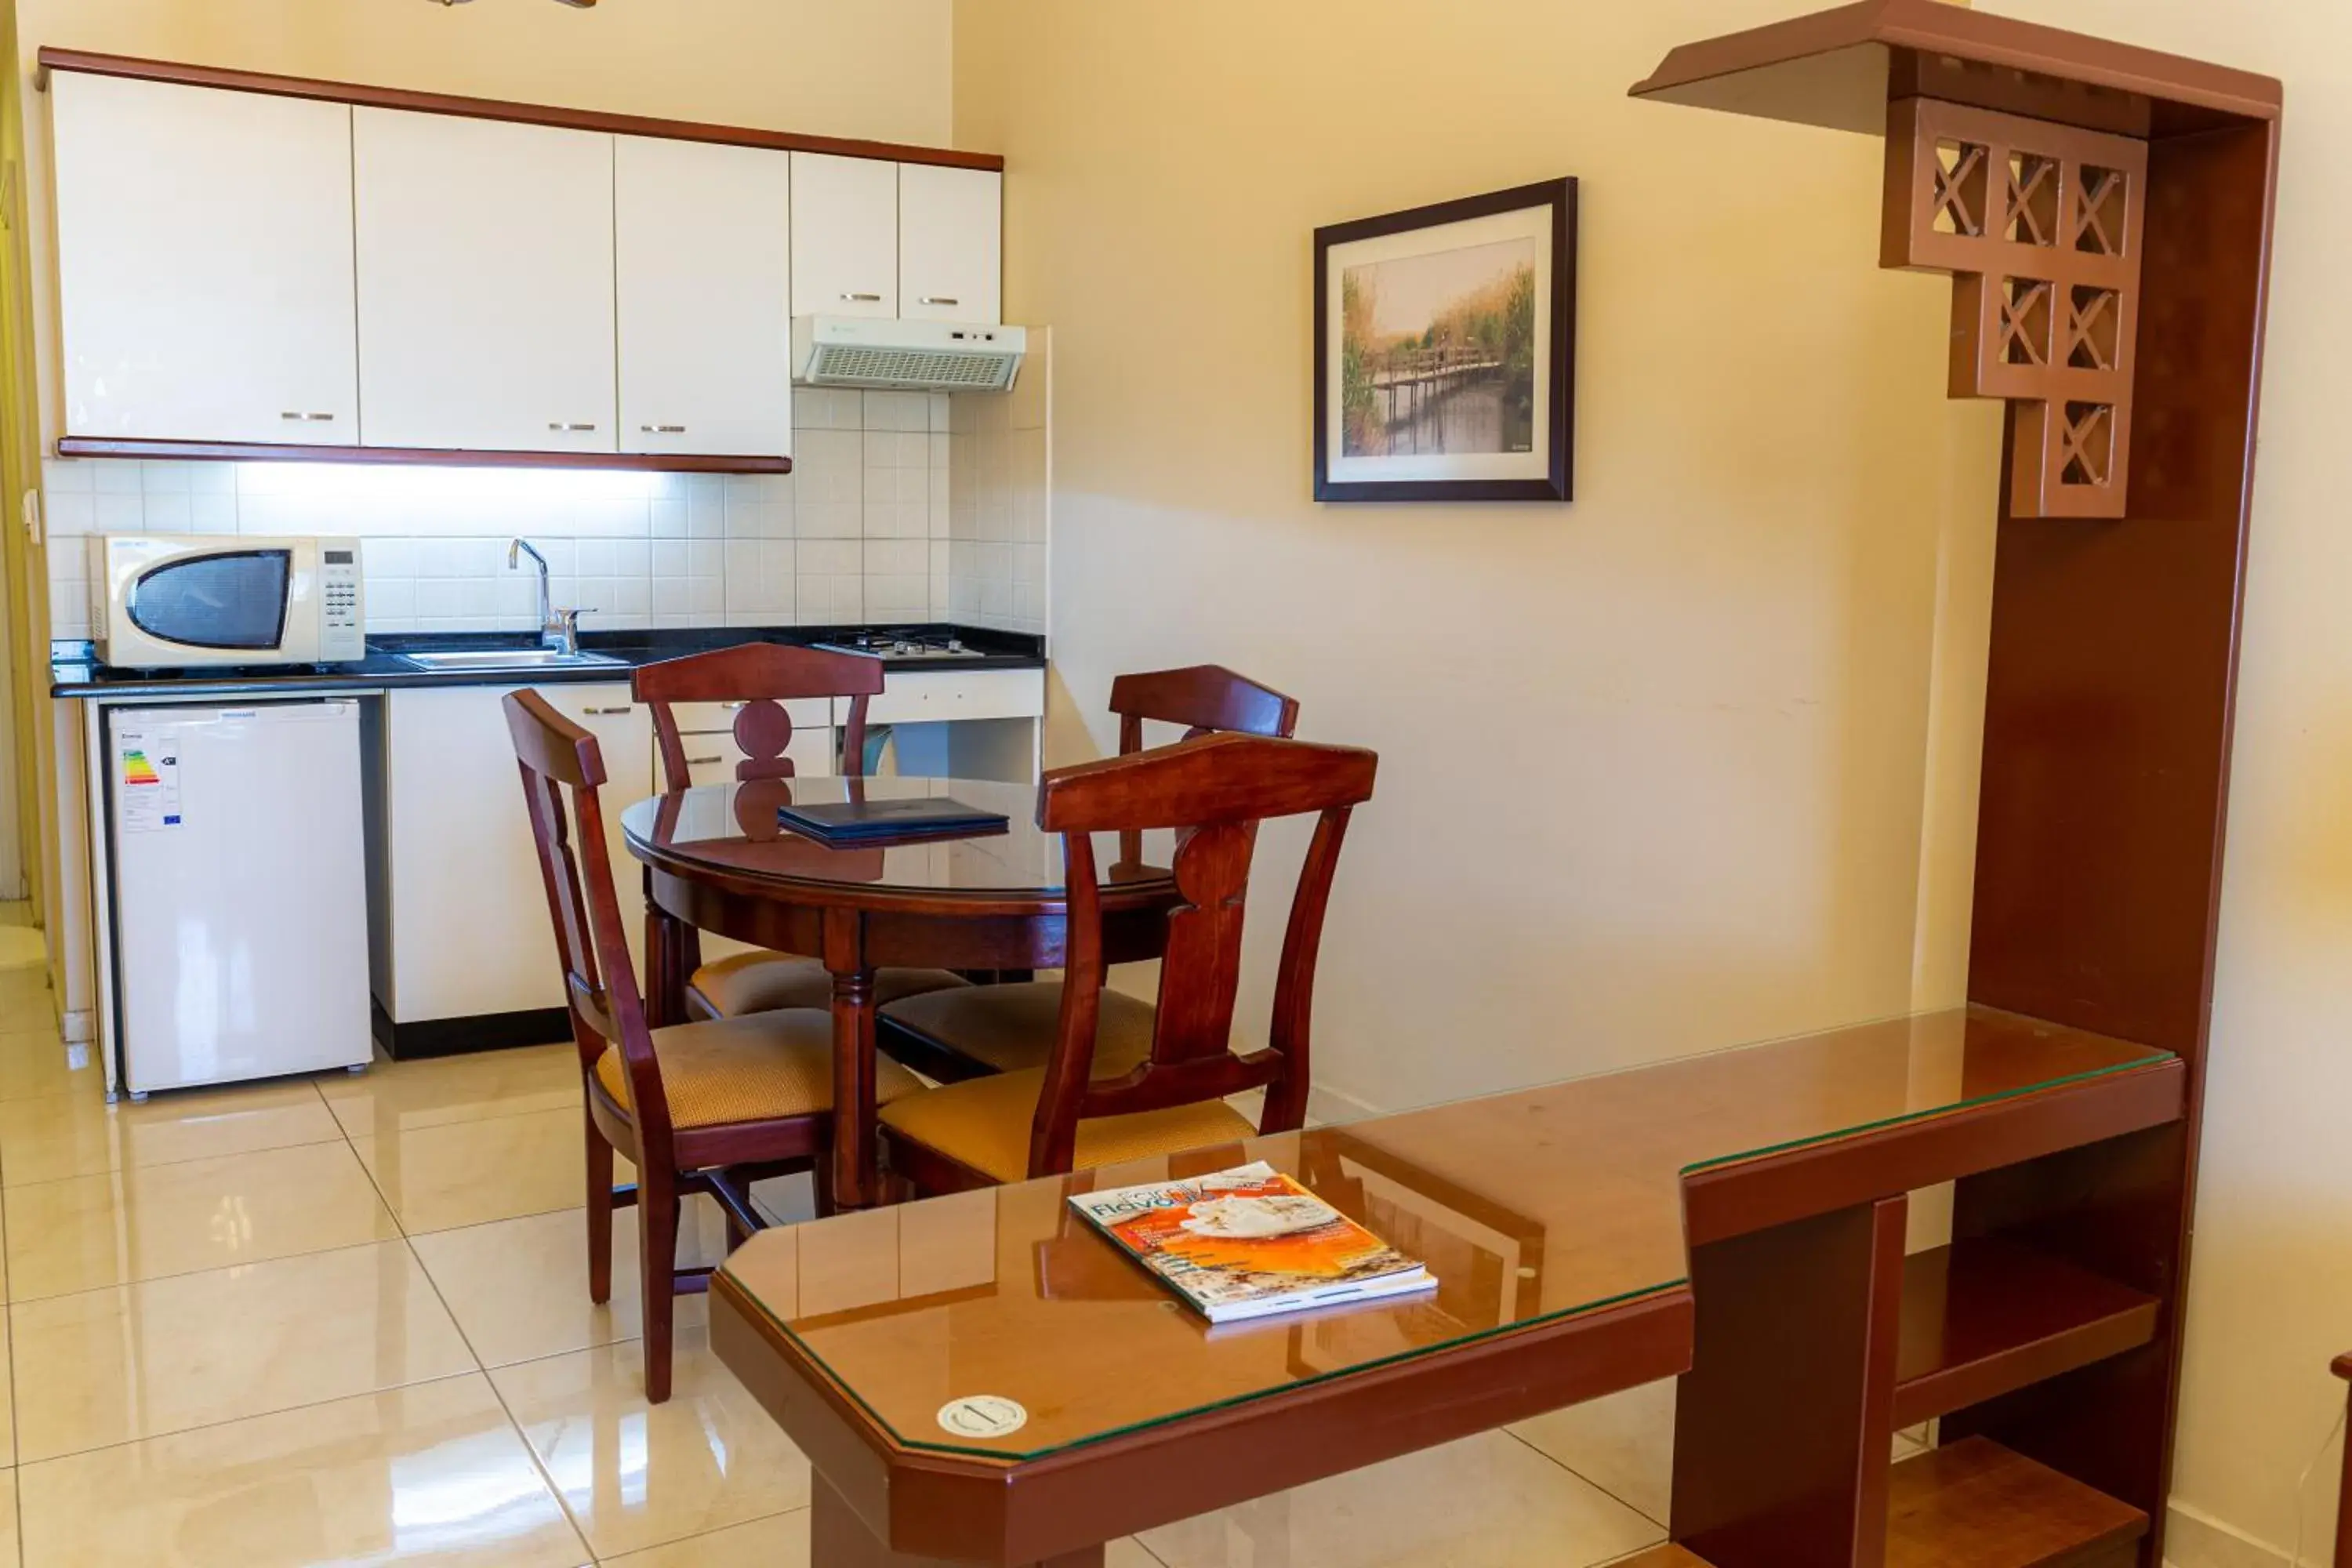 Kitchen or kitchenette, Kitchen/Kitchenette in Comfort Hotel Suites